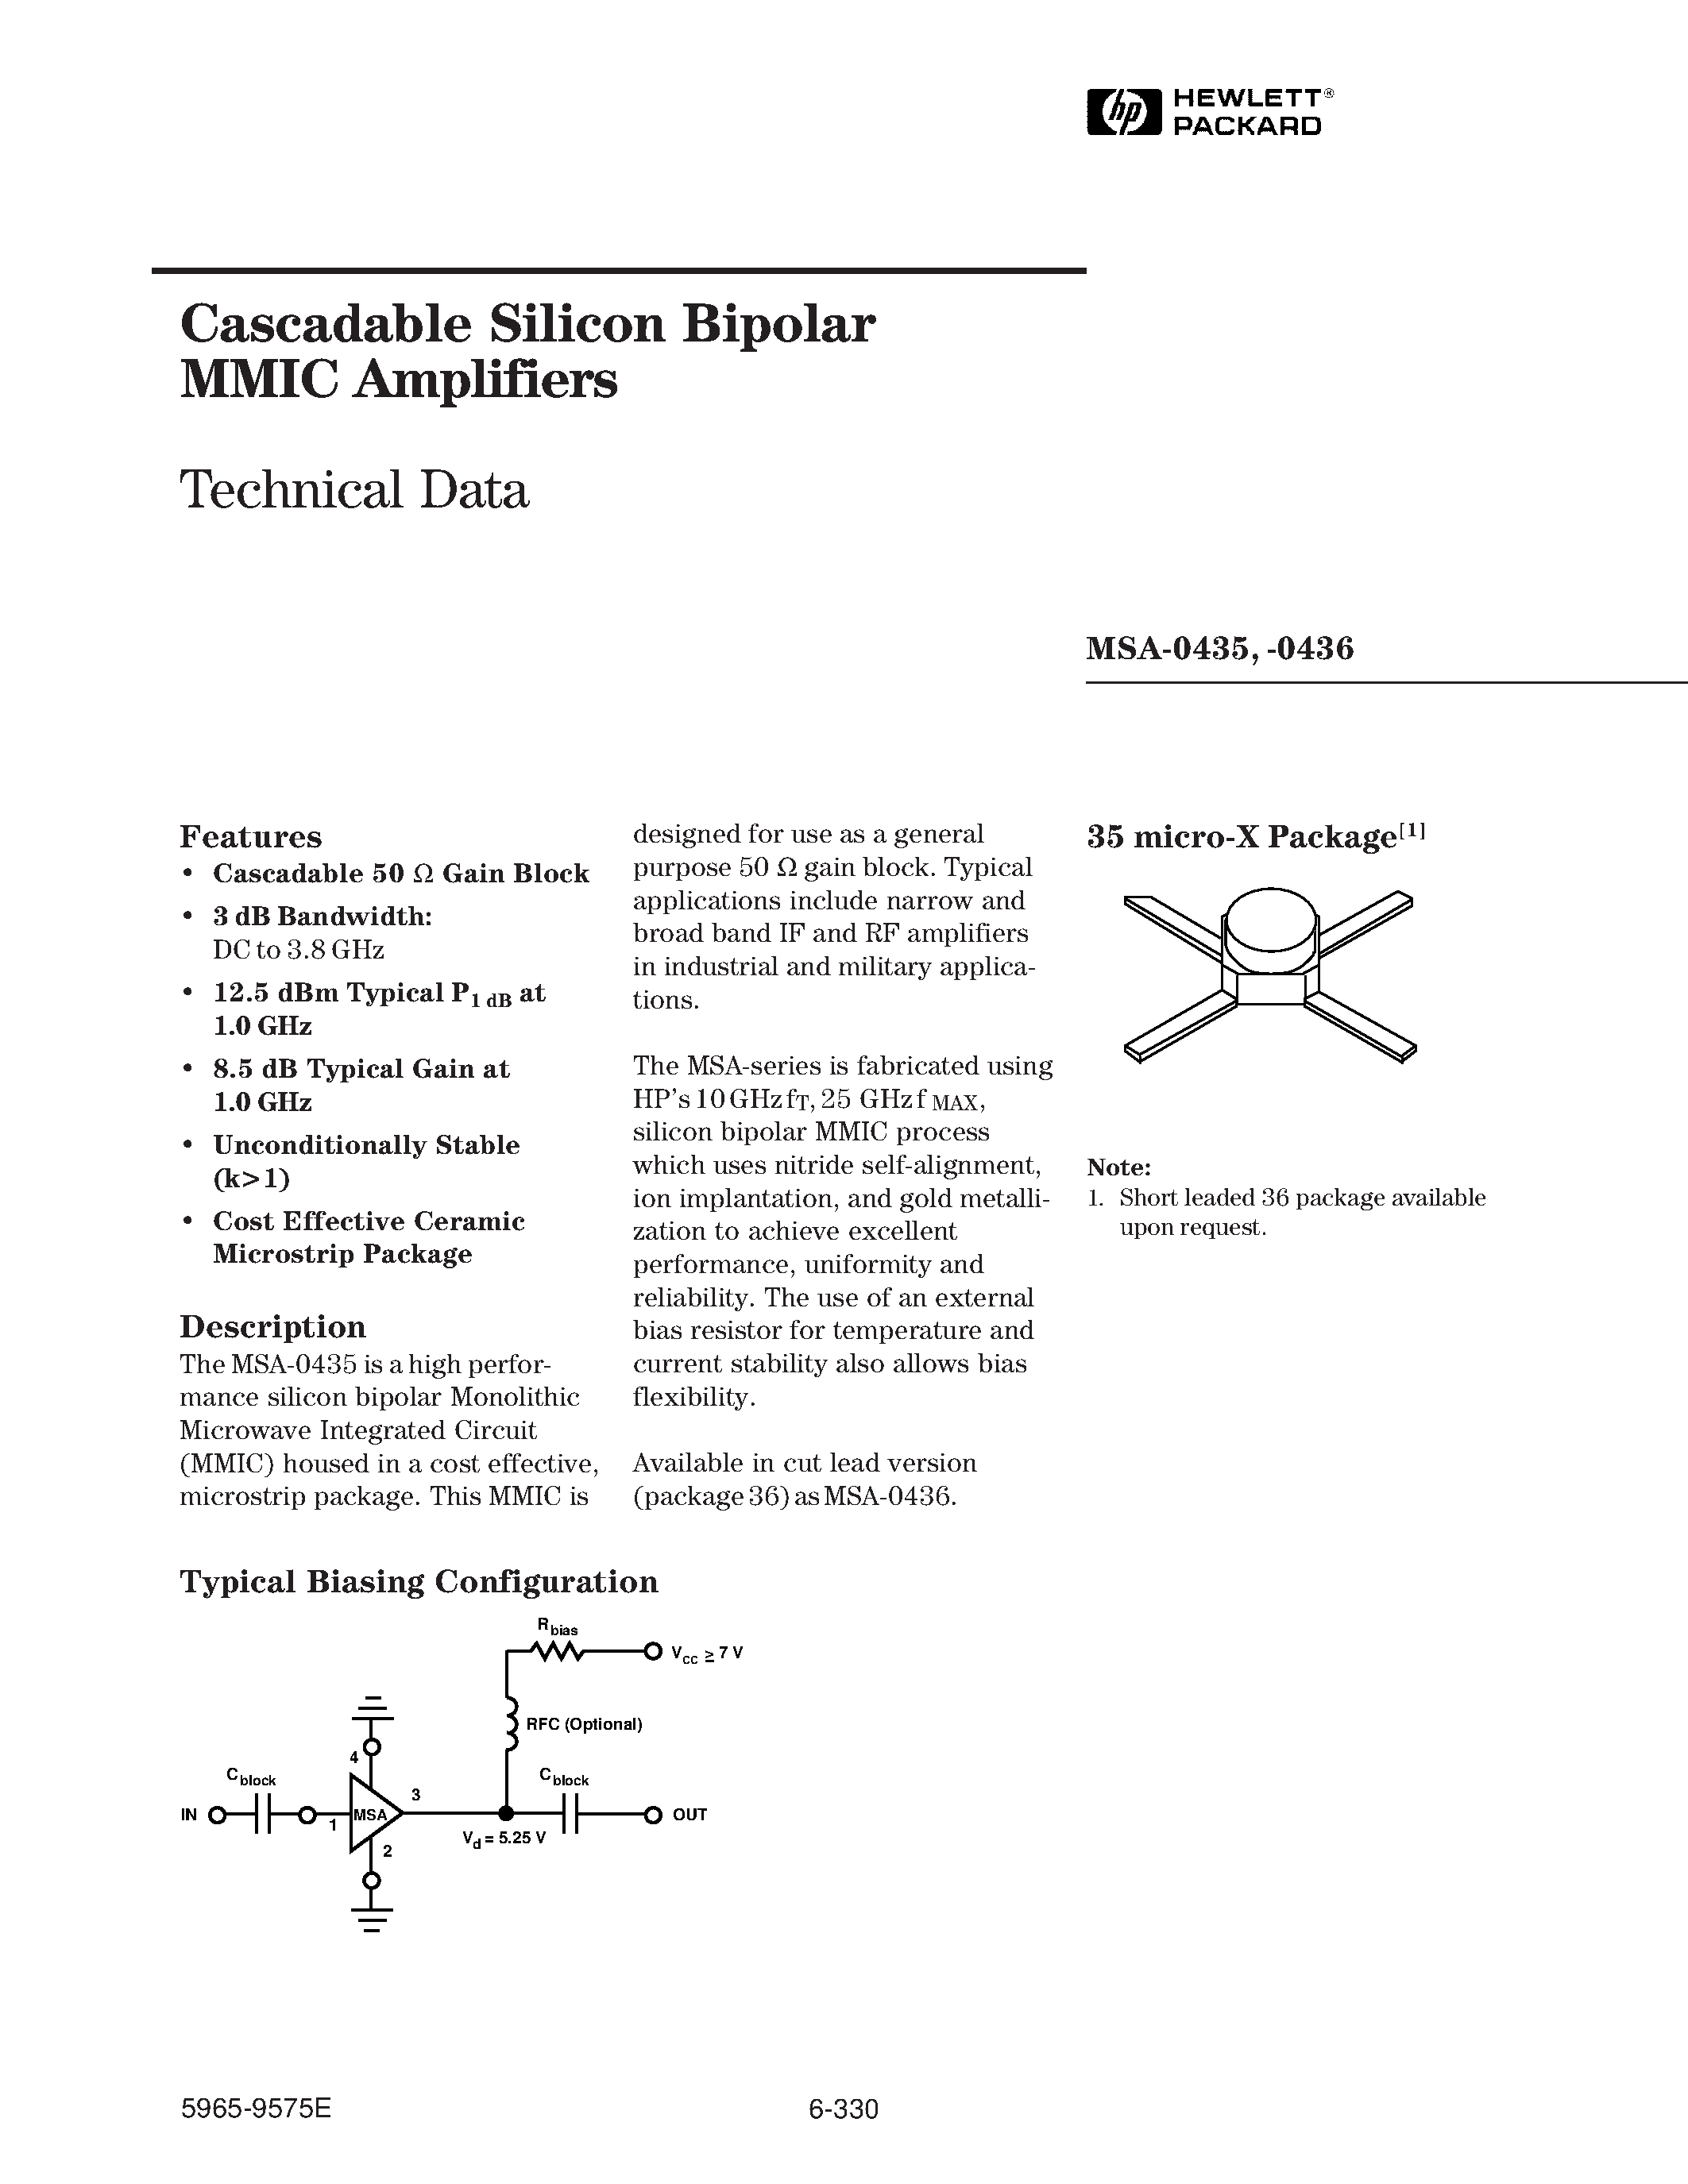 Даташит MSA-0435-(MSA-0435 / MSA-0436) Cascadable Silicon Bipolar MMIC Amplifier страница 1